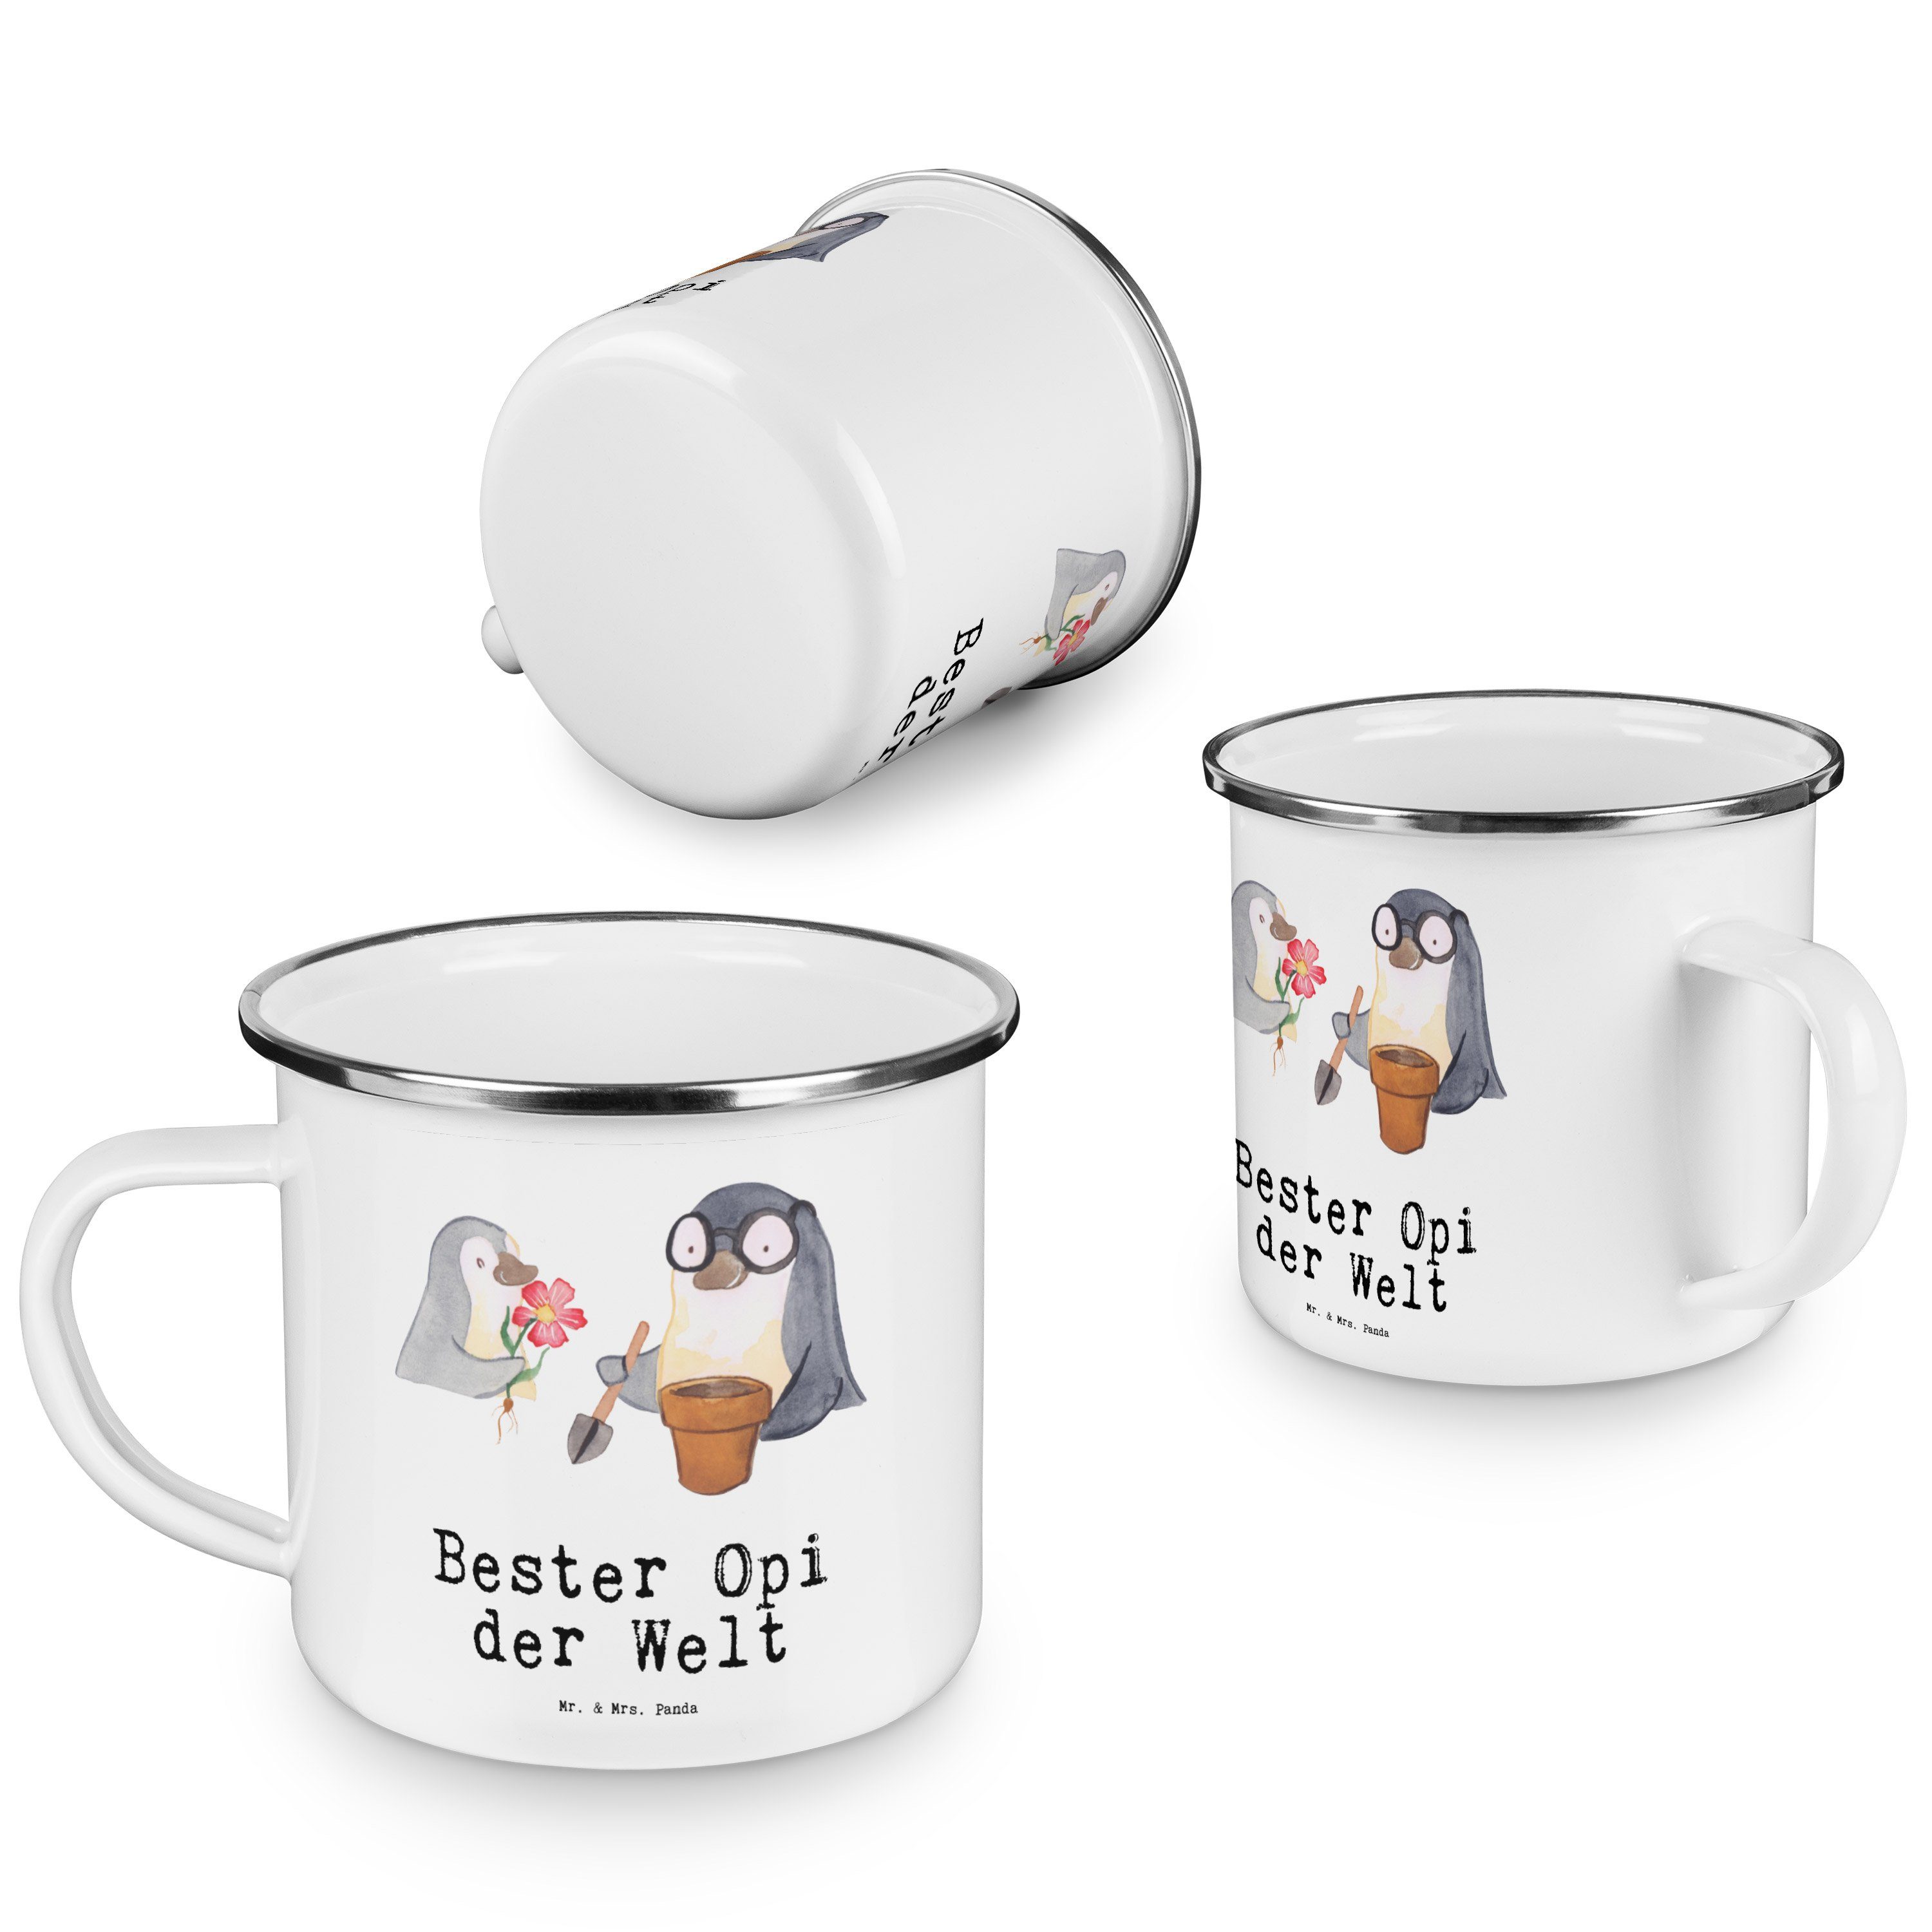 - Geschenk, Pinguin Freude Mrs. & Panda Becher Bester Weiß Emaille der Welt - Mr. machen, Opi Geburts,